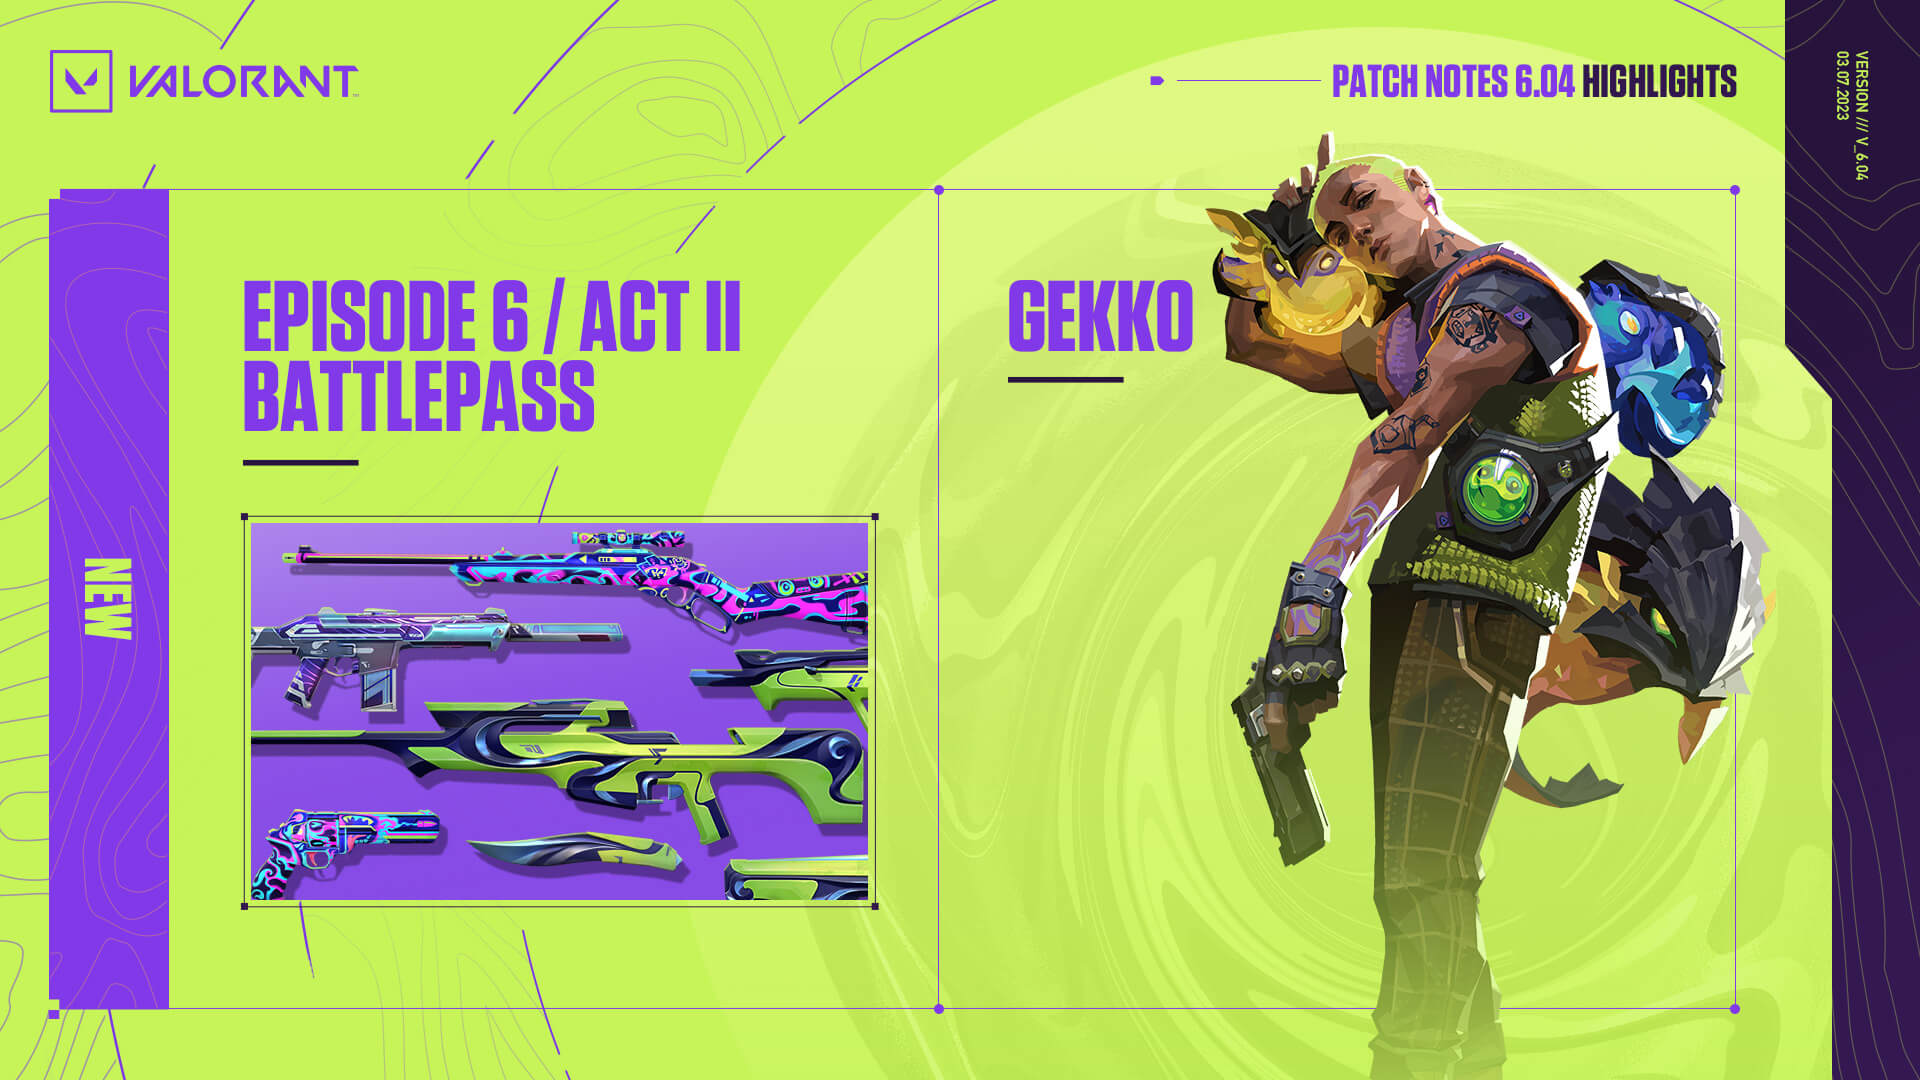 VALORANT Gekko: Hãy cùng chiêm ngưỡng Gekko - một trong những nhân vật trong game VALORANT được yêu thích nhất hiện nay! Xem hình ảnh liên quan để khám phá thêm về Gekko, vũ khí mới và những chiến lược chơi đỉnh cao!